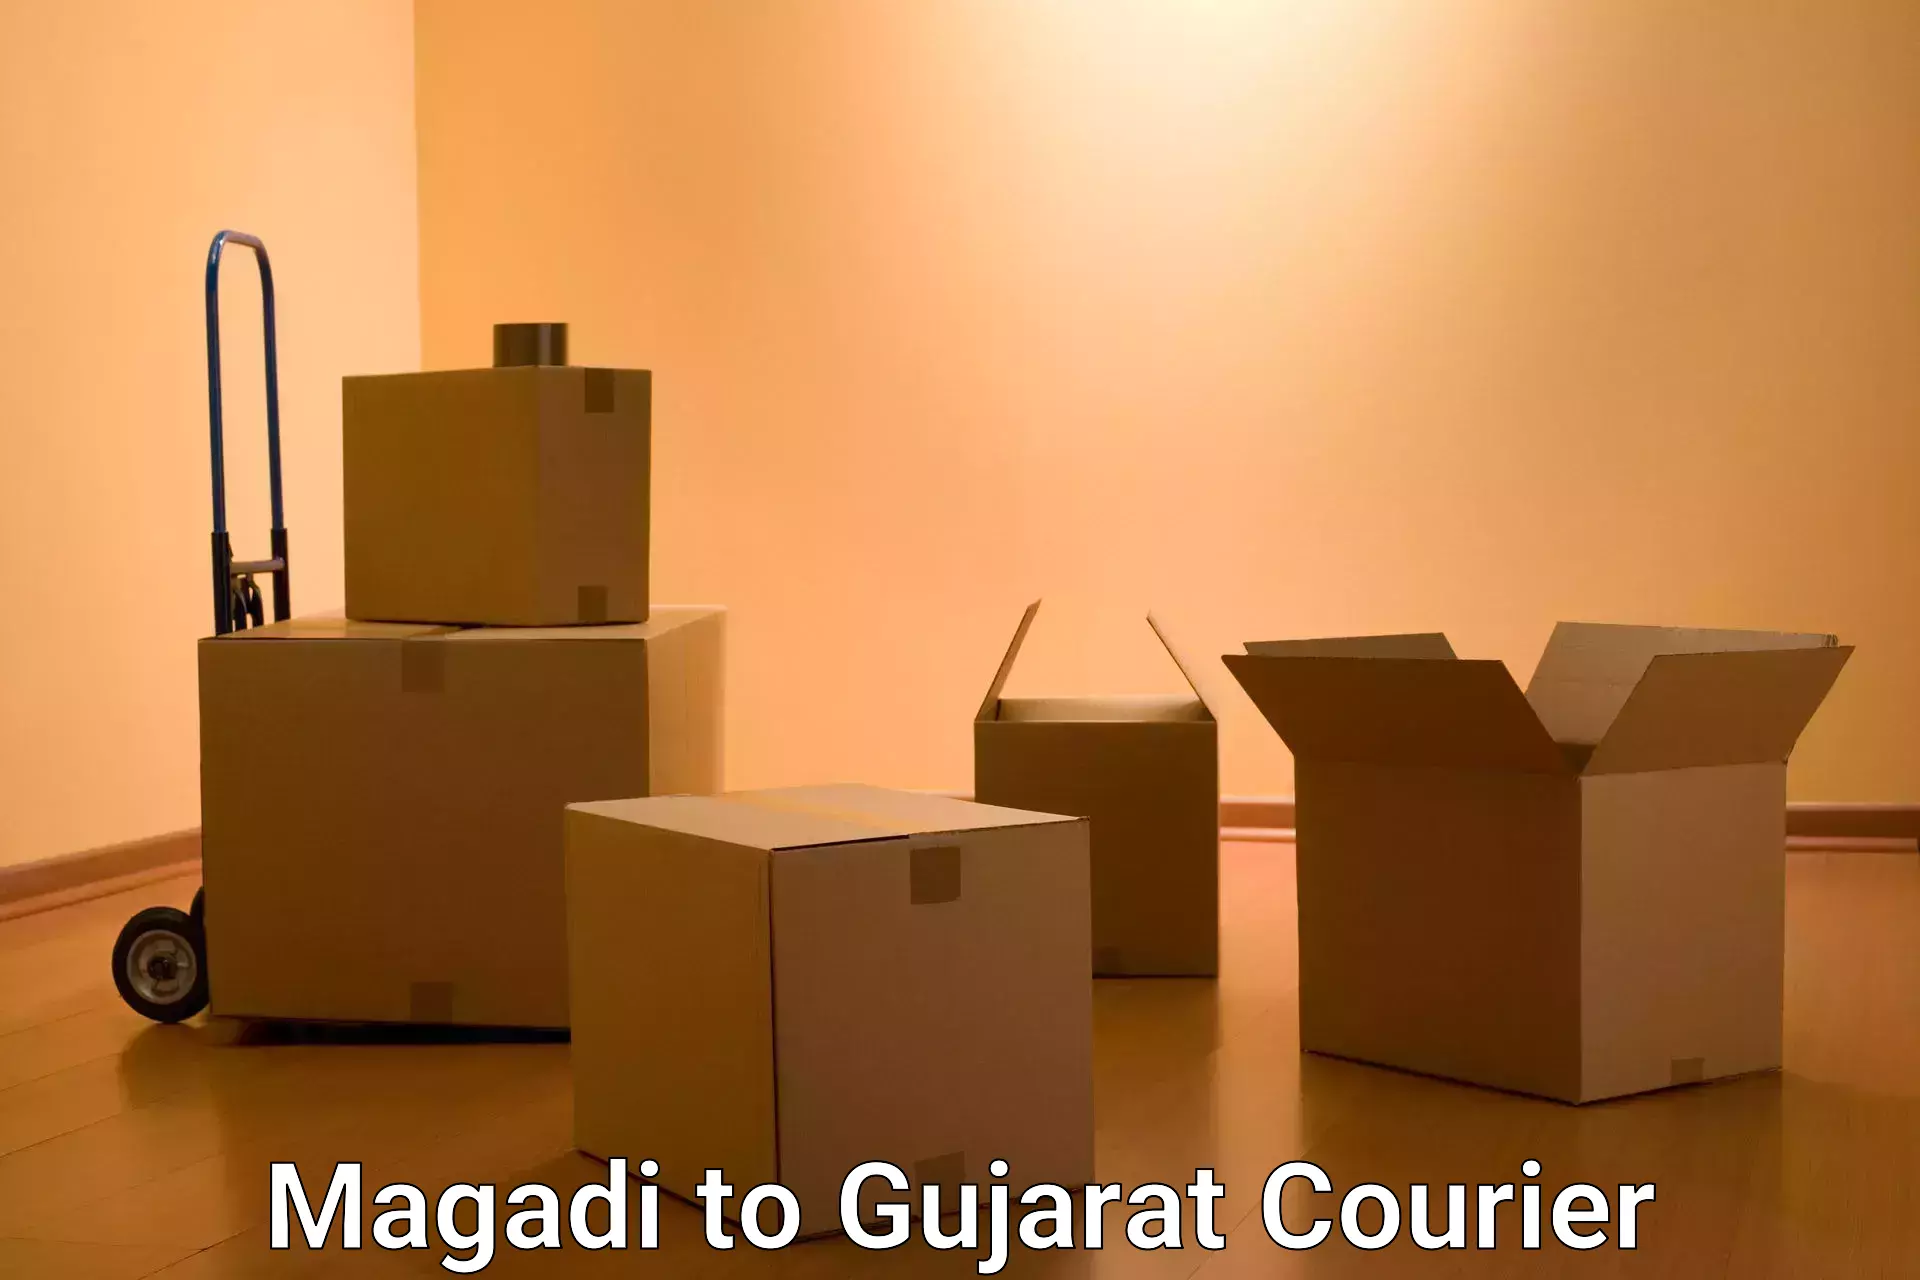 Online shipping calculator Magadi to Dwarka